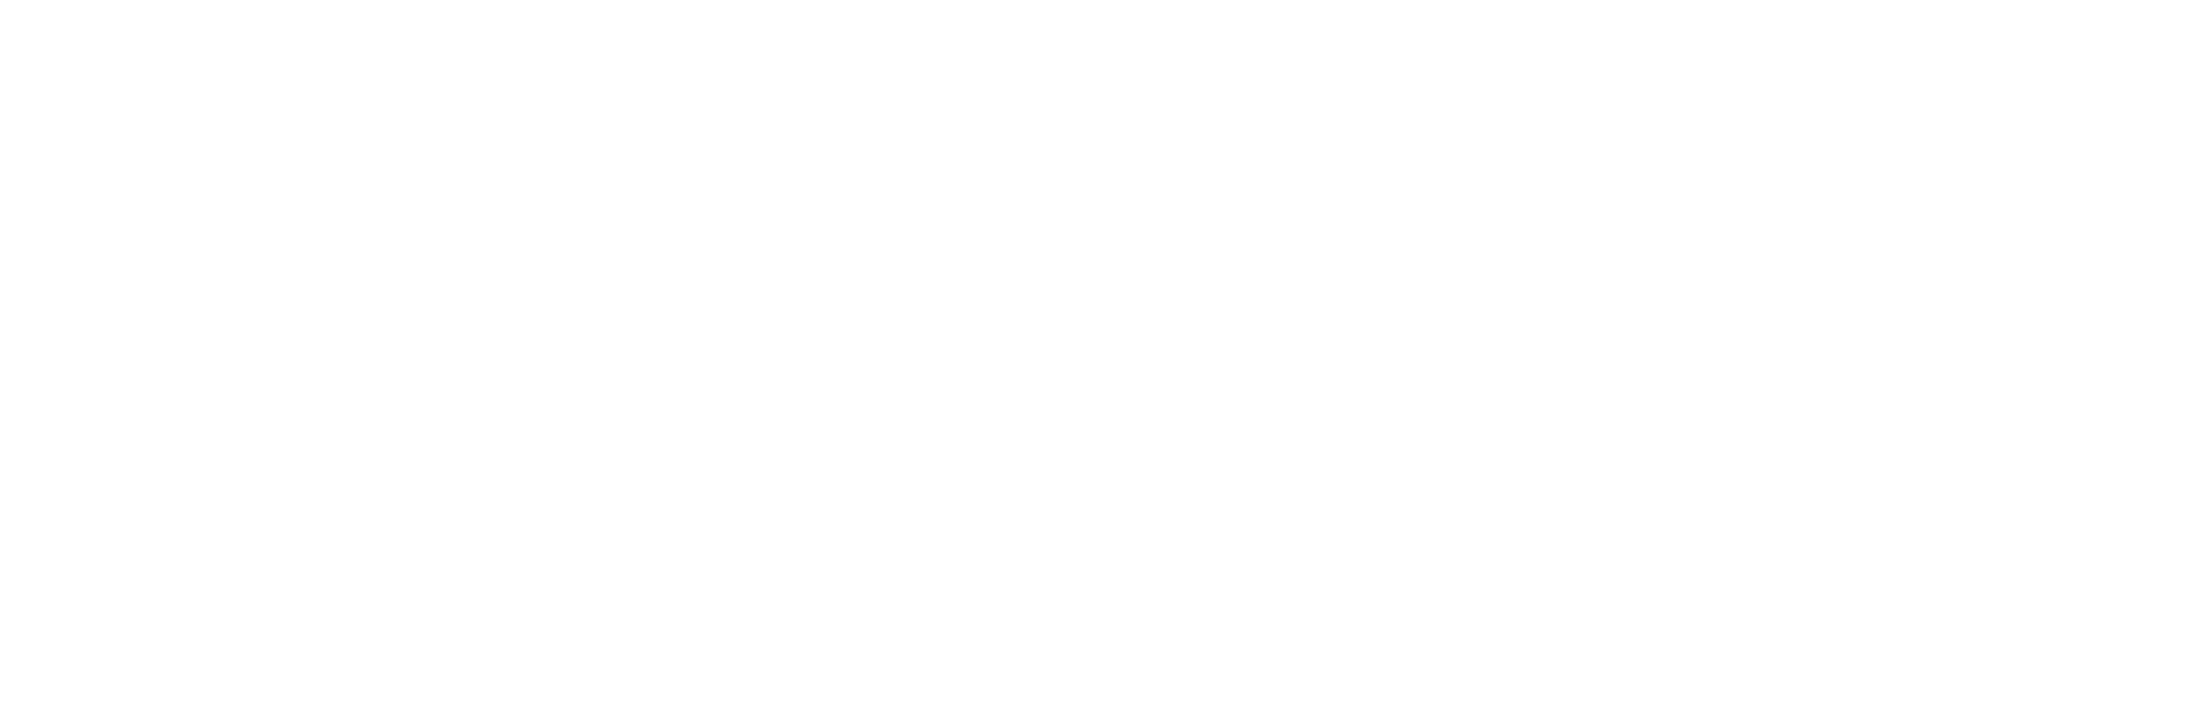 Kancelaria prawna Frackowiak Law logo